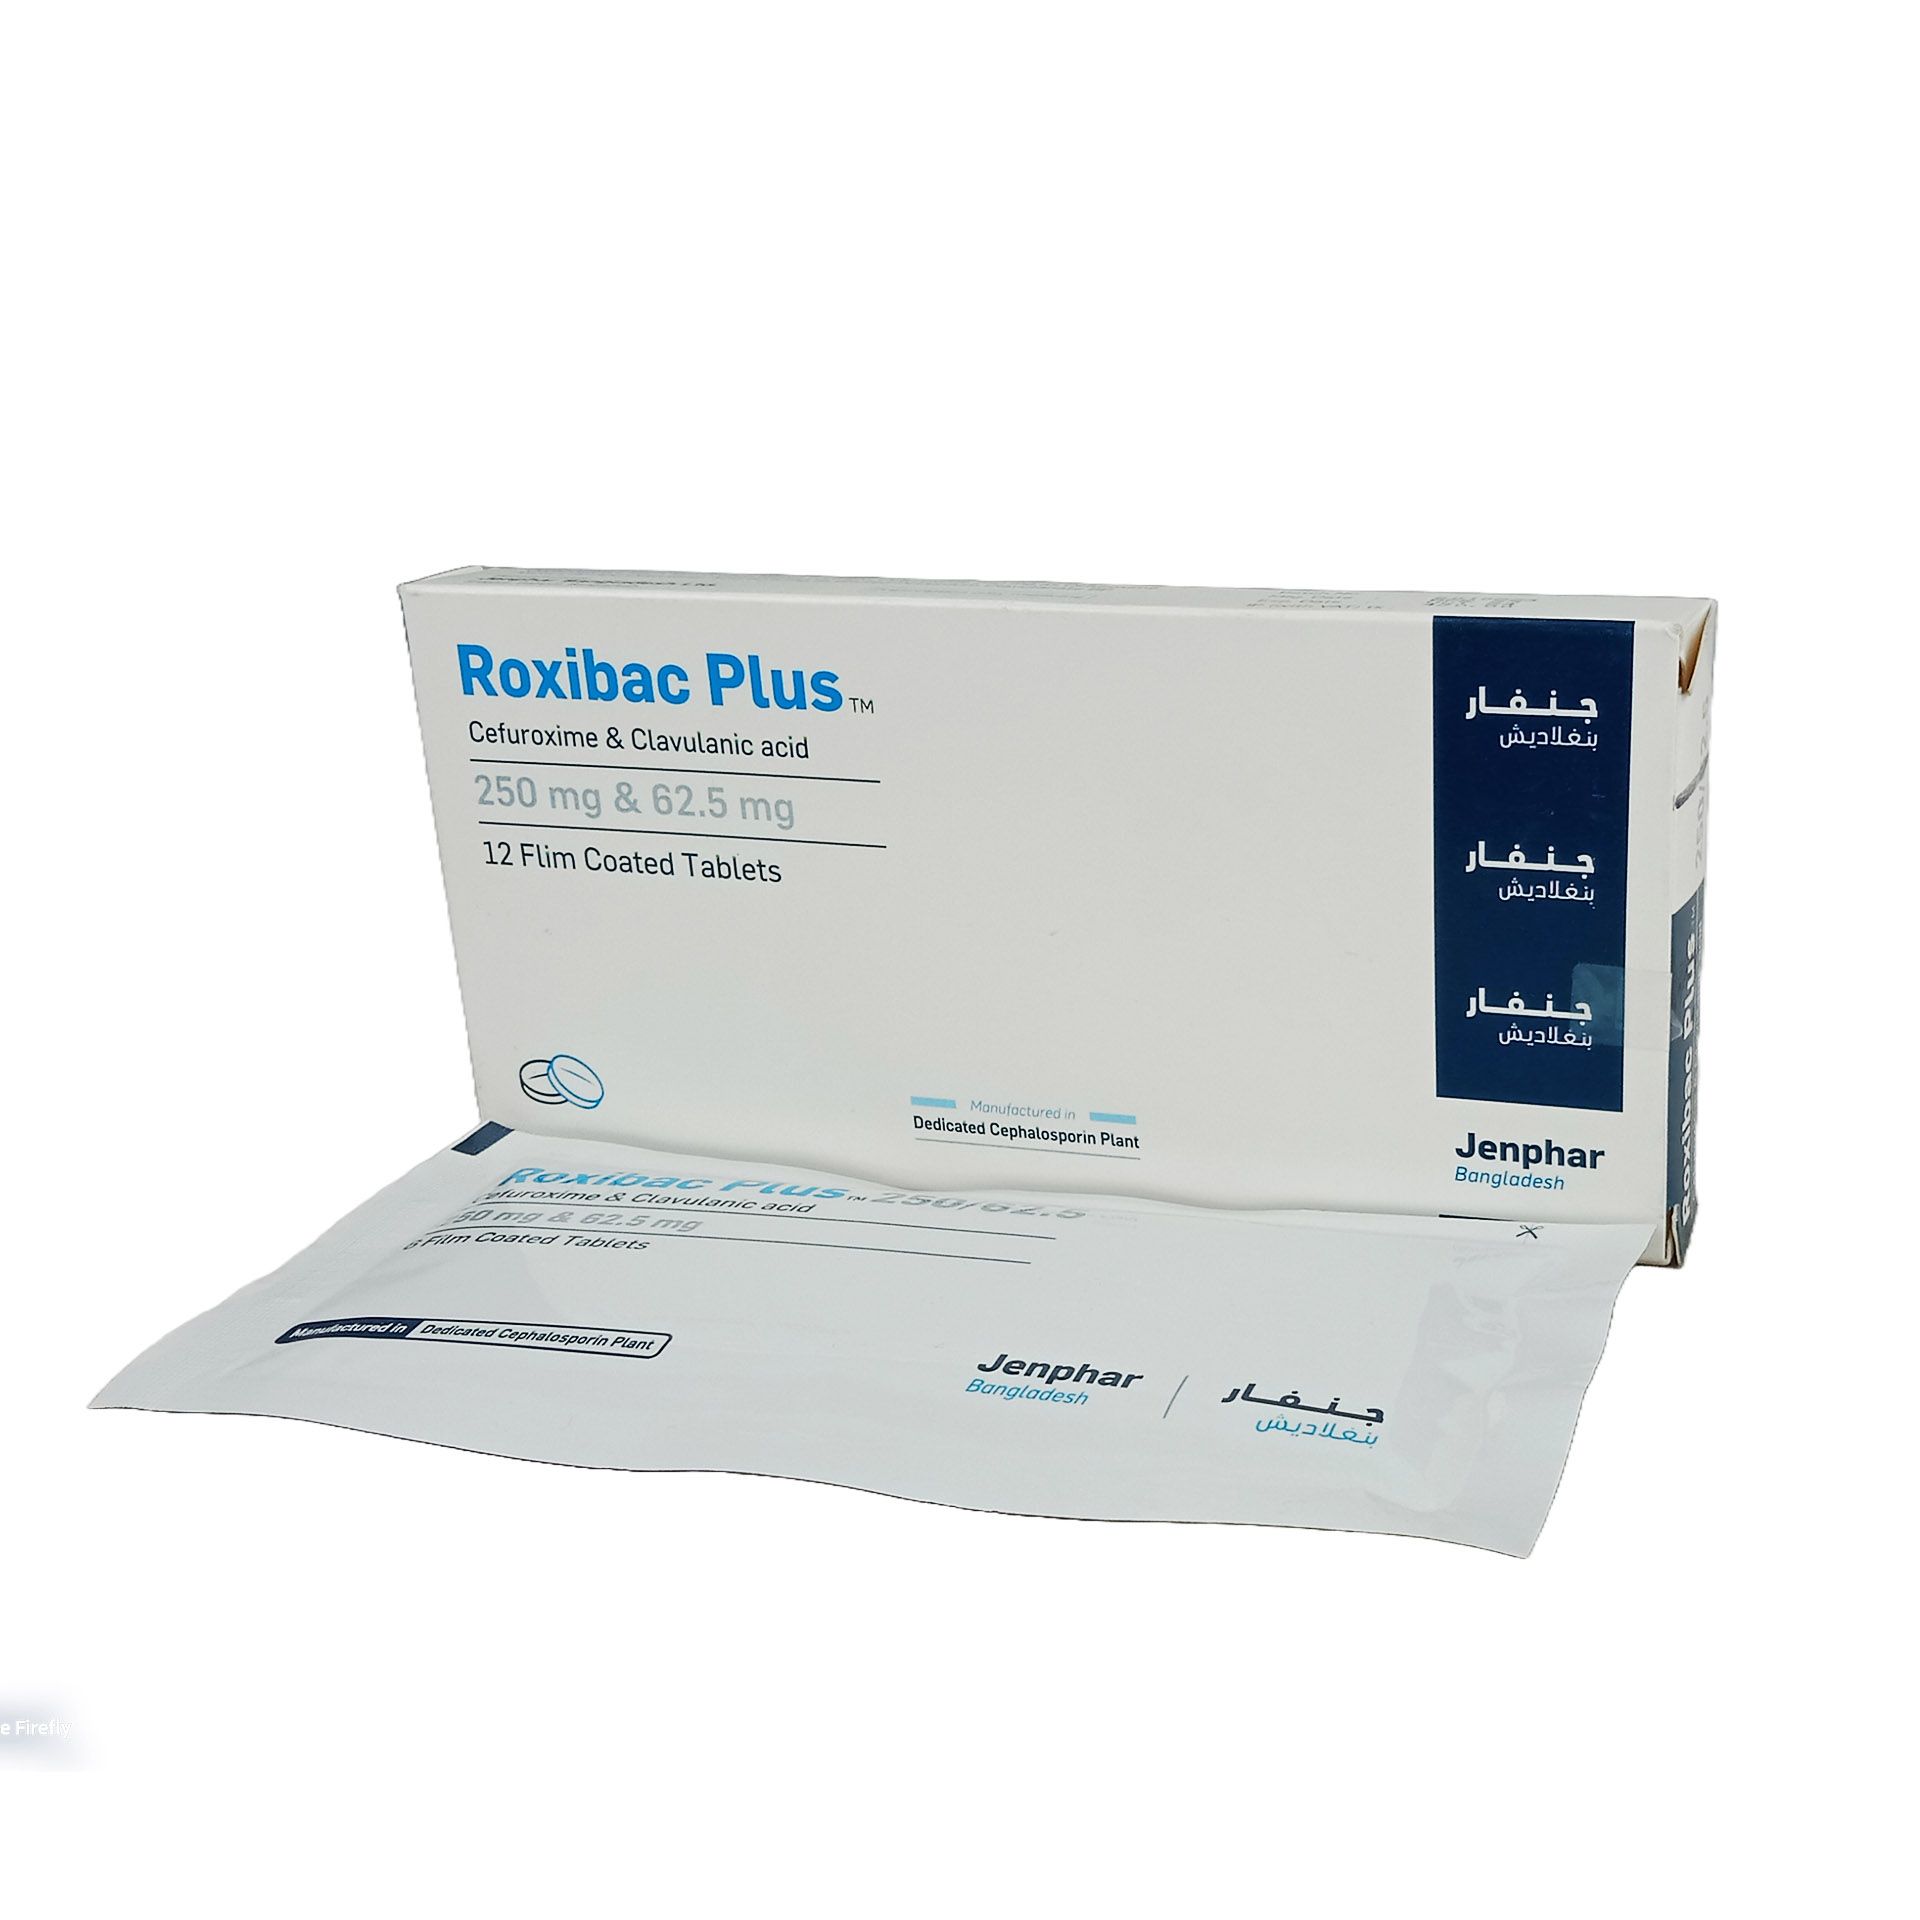 Roxibac Plus 250mg+62.5mg Tablet